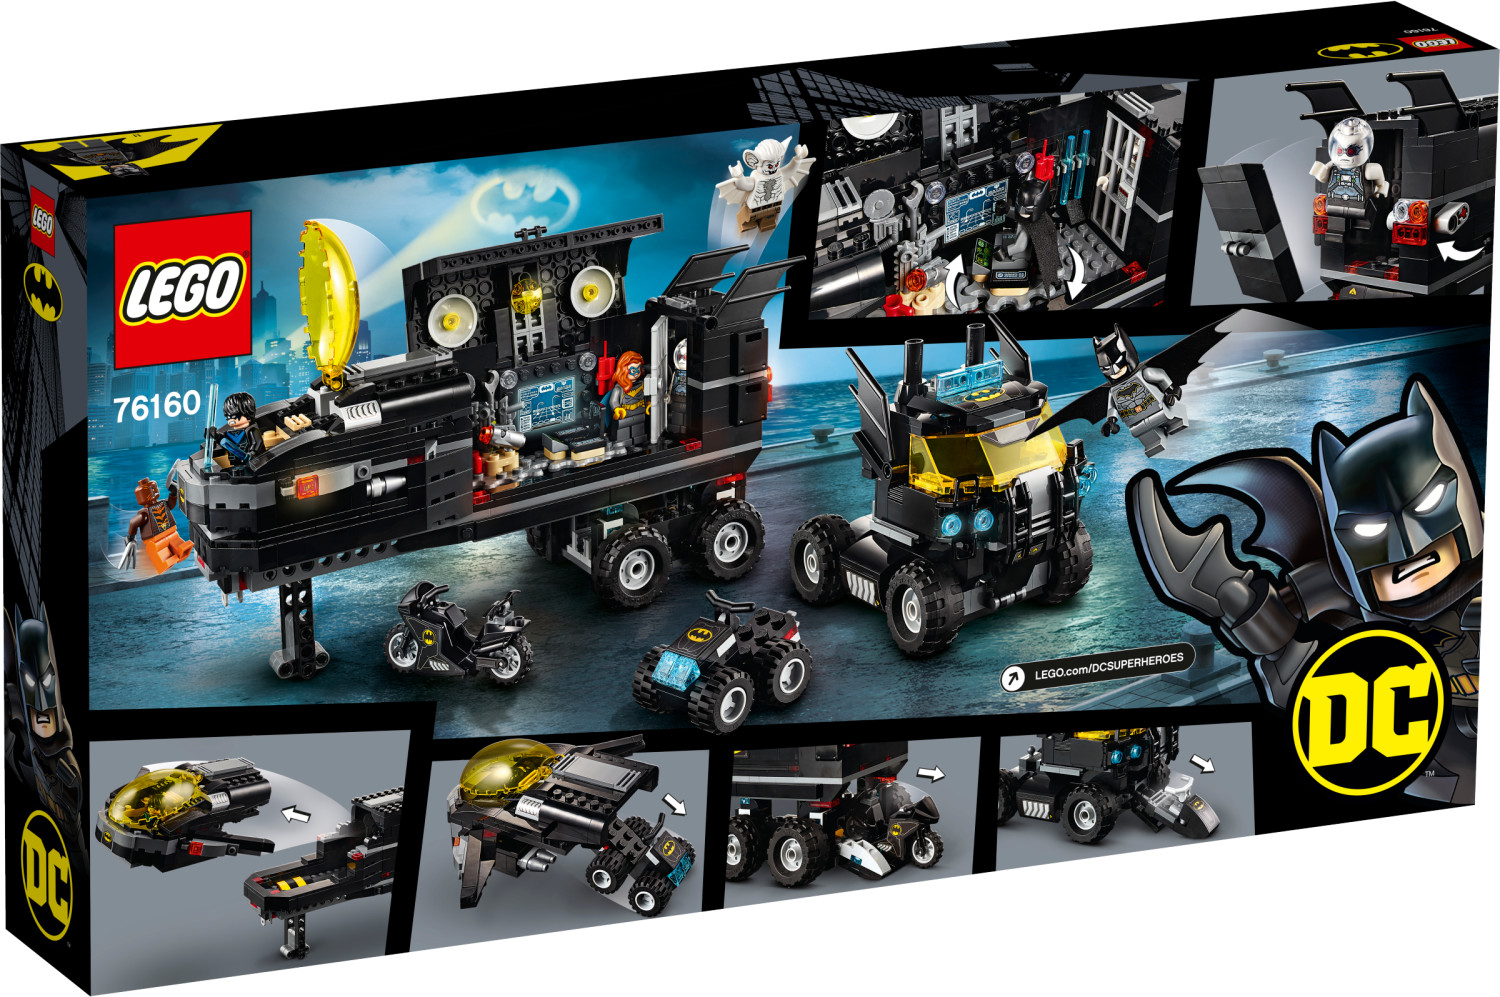 LEGO DC Comics Super Heroes - La Batmobile télécommandée (76112) au  meilleur prix sur